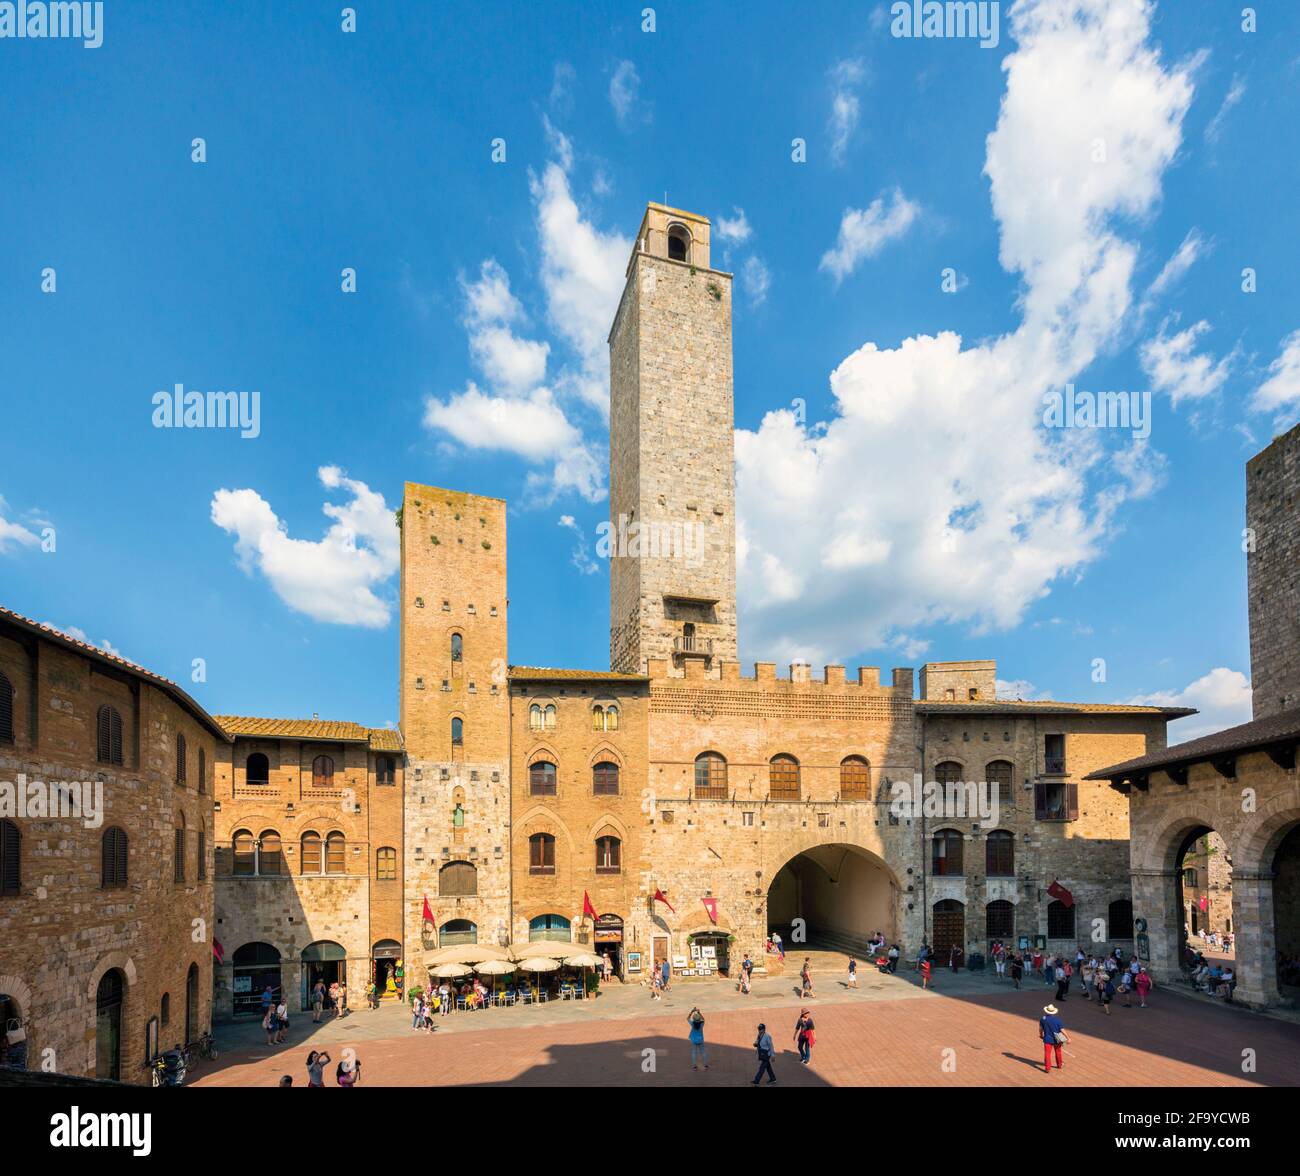 San Gimignano, Provincia di Siena, Toscana, Italia. Piazza del Duomo. Il centro storico di San Gimignano è patrimonio dell'umanità dell'UNESCO. Foto Stock